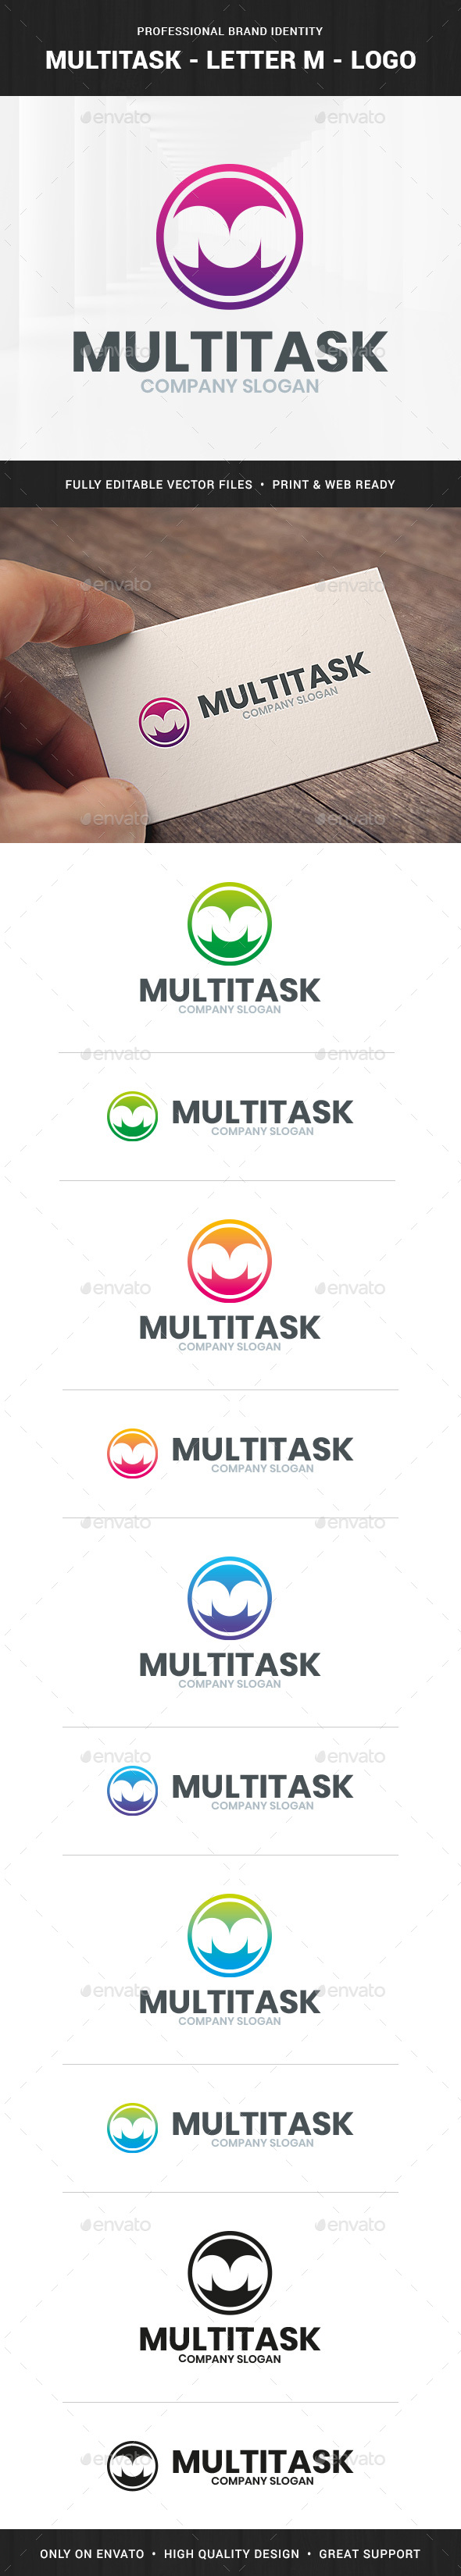 Multitask - Letter M Logo